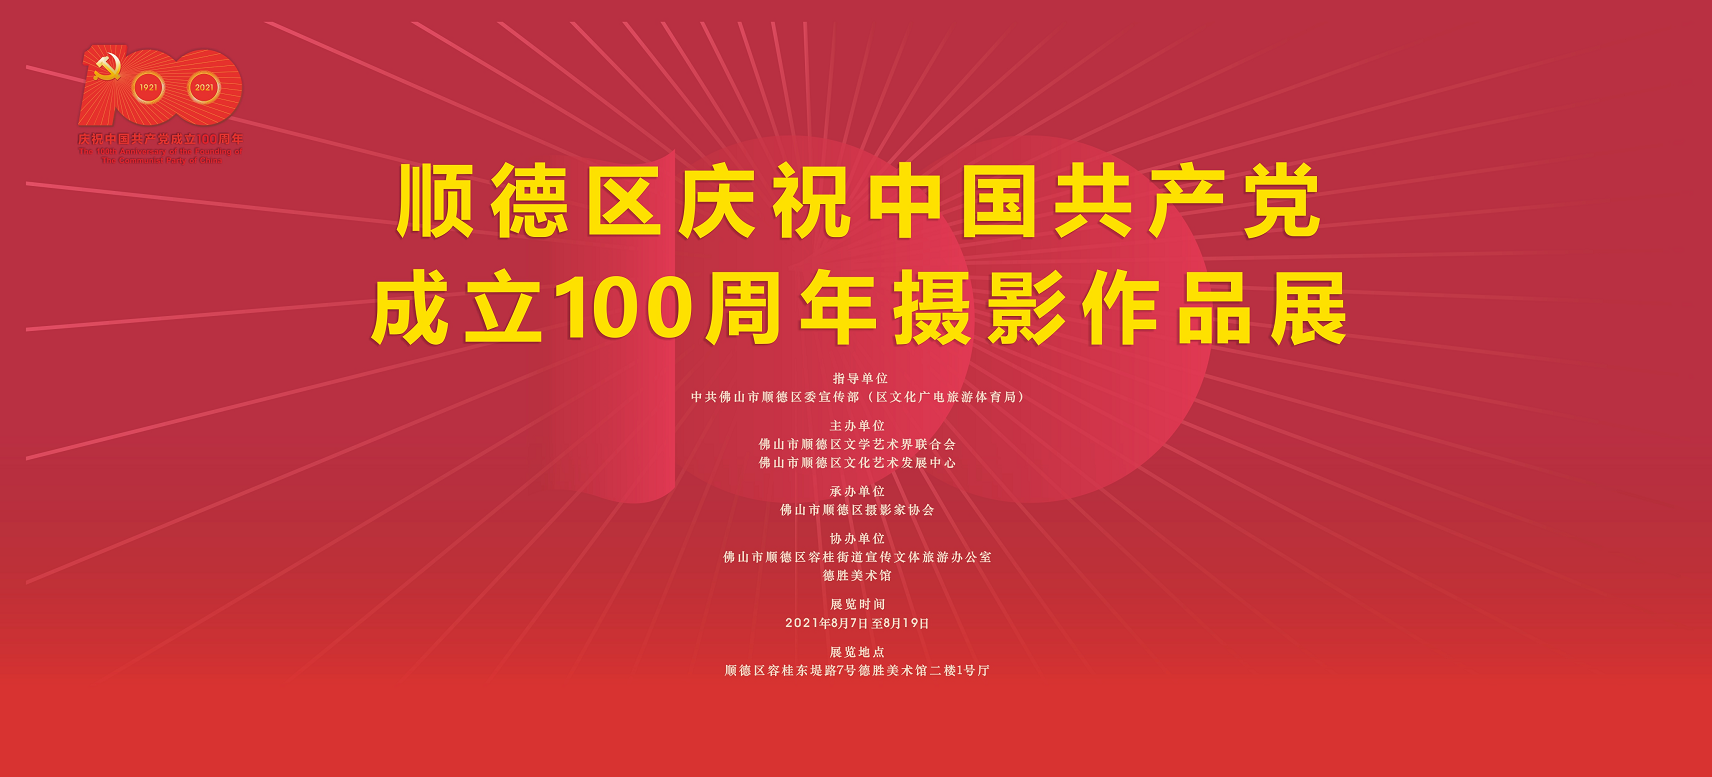 顺德区庆祝中国共产党成立100周年摄影作品展